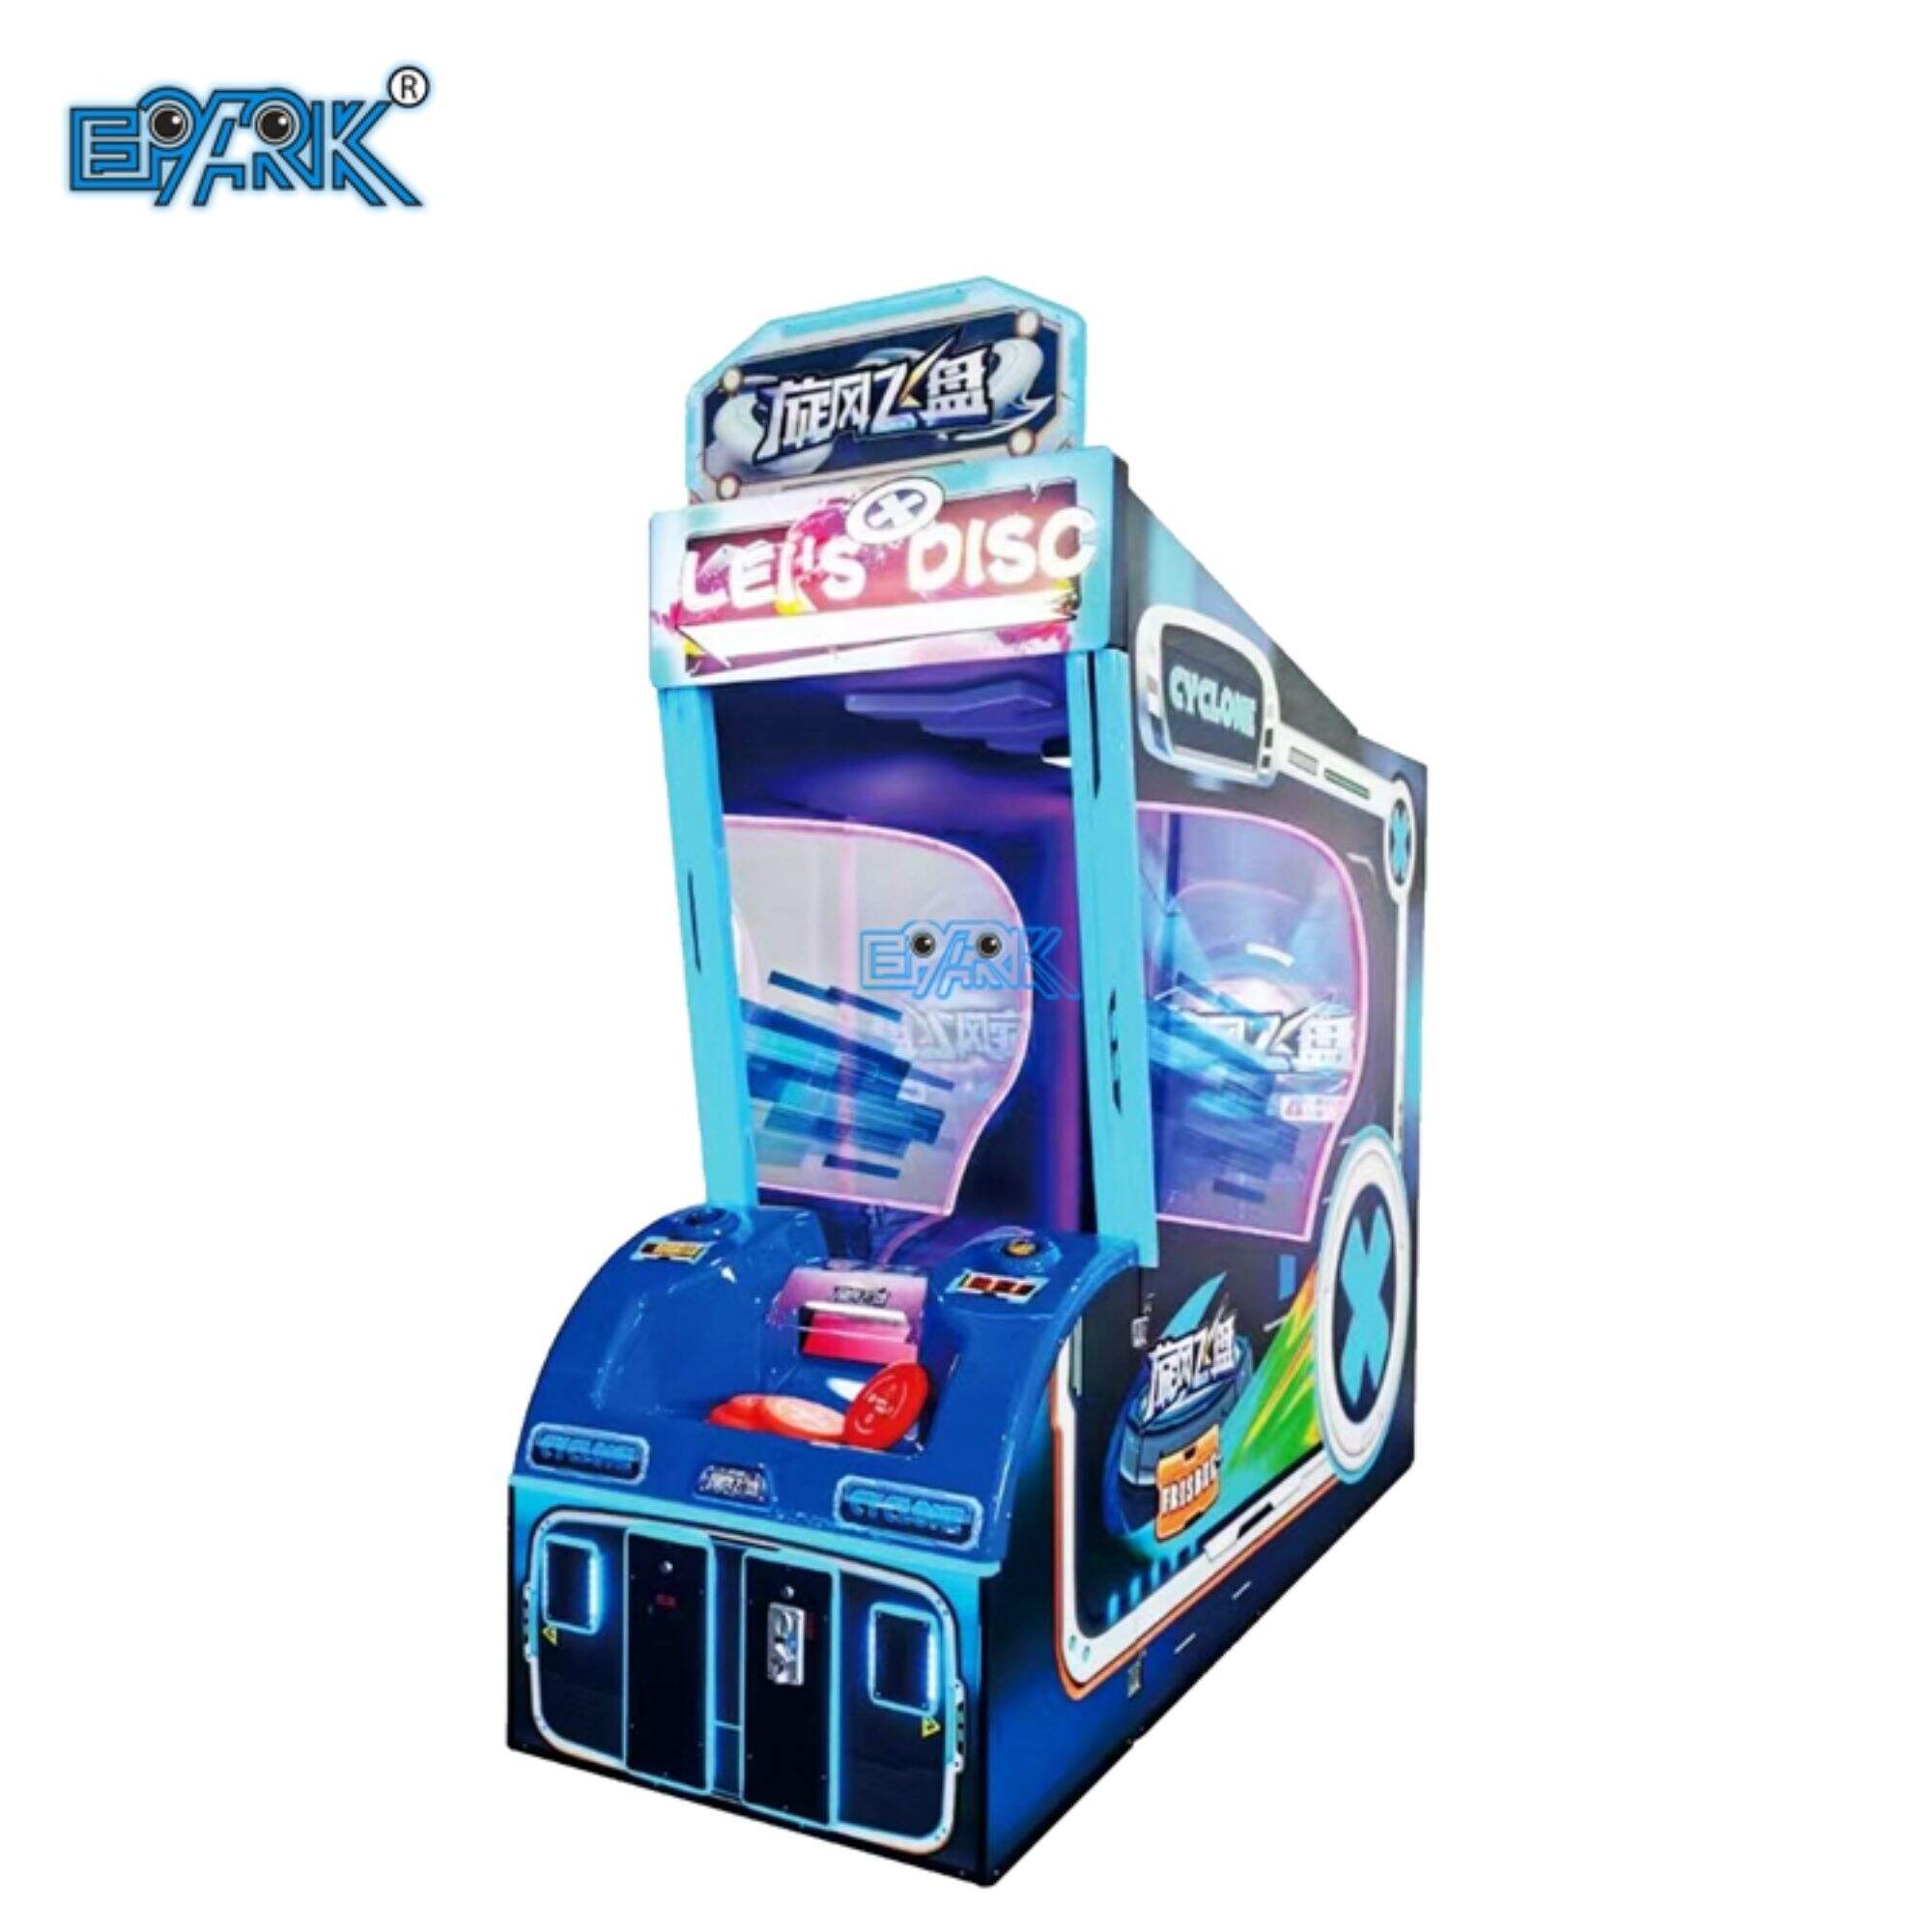 Münzbetriebener Spielautomat zum Werfen von Frisbees für Erwachsene und Kinder zur Dekompressions-Arcade-Unterhaltung